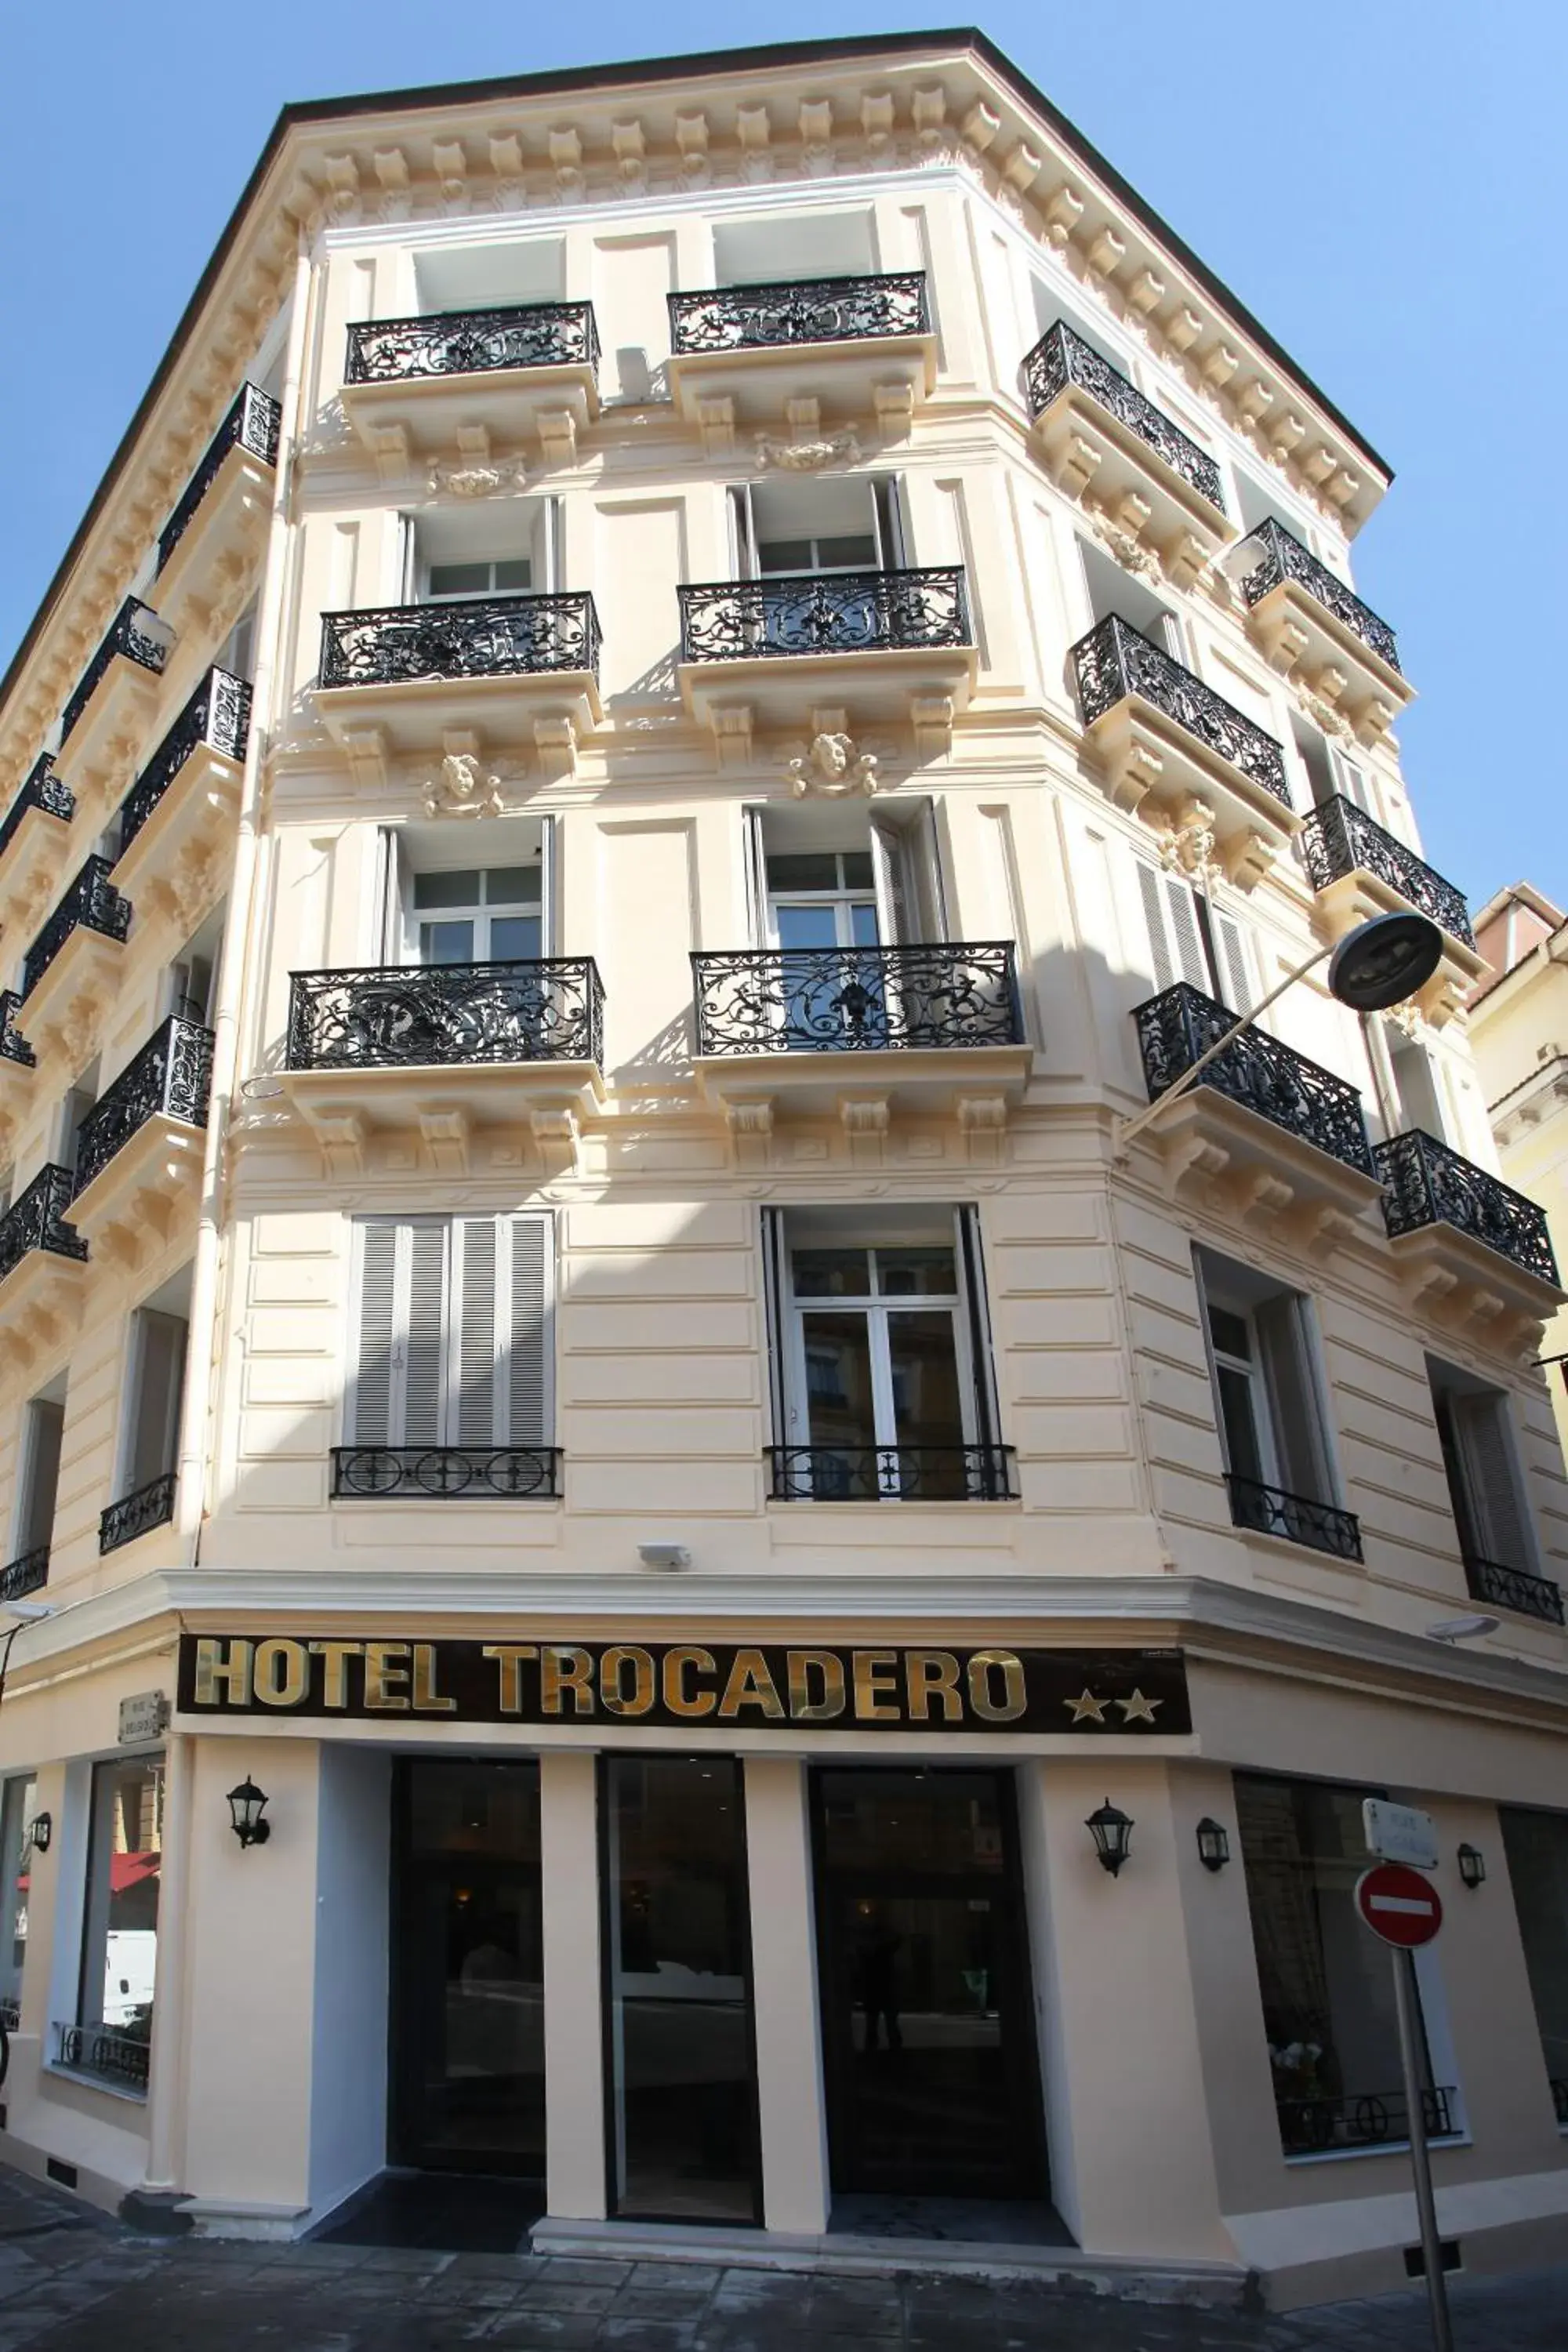 Facade/entrance, Property Building in Trocadero